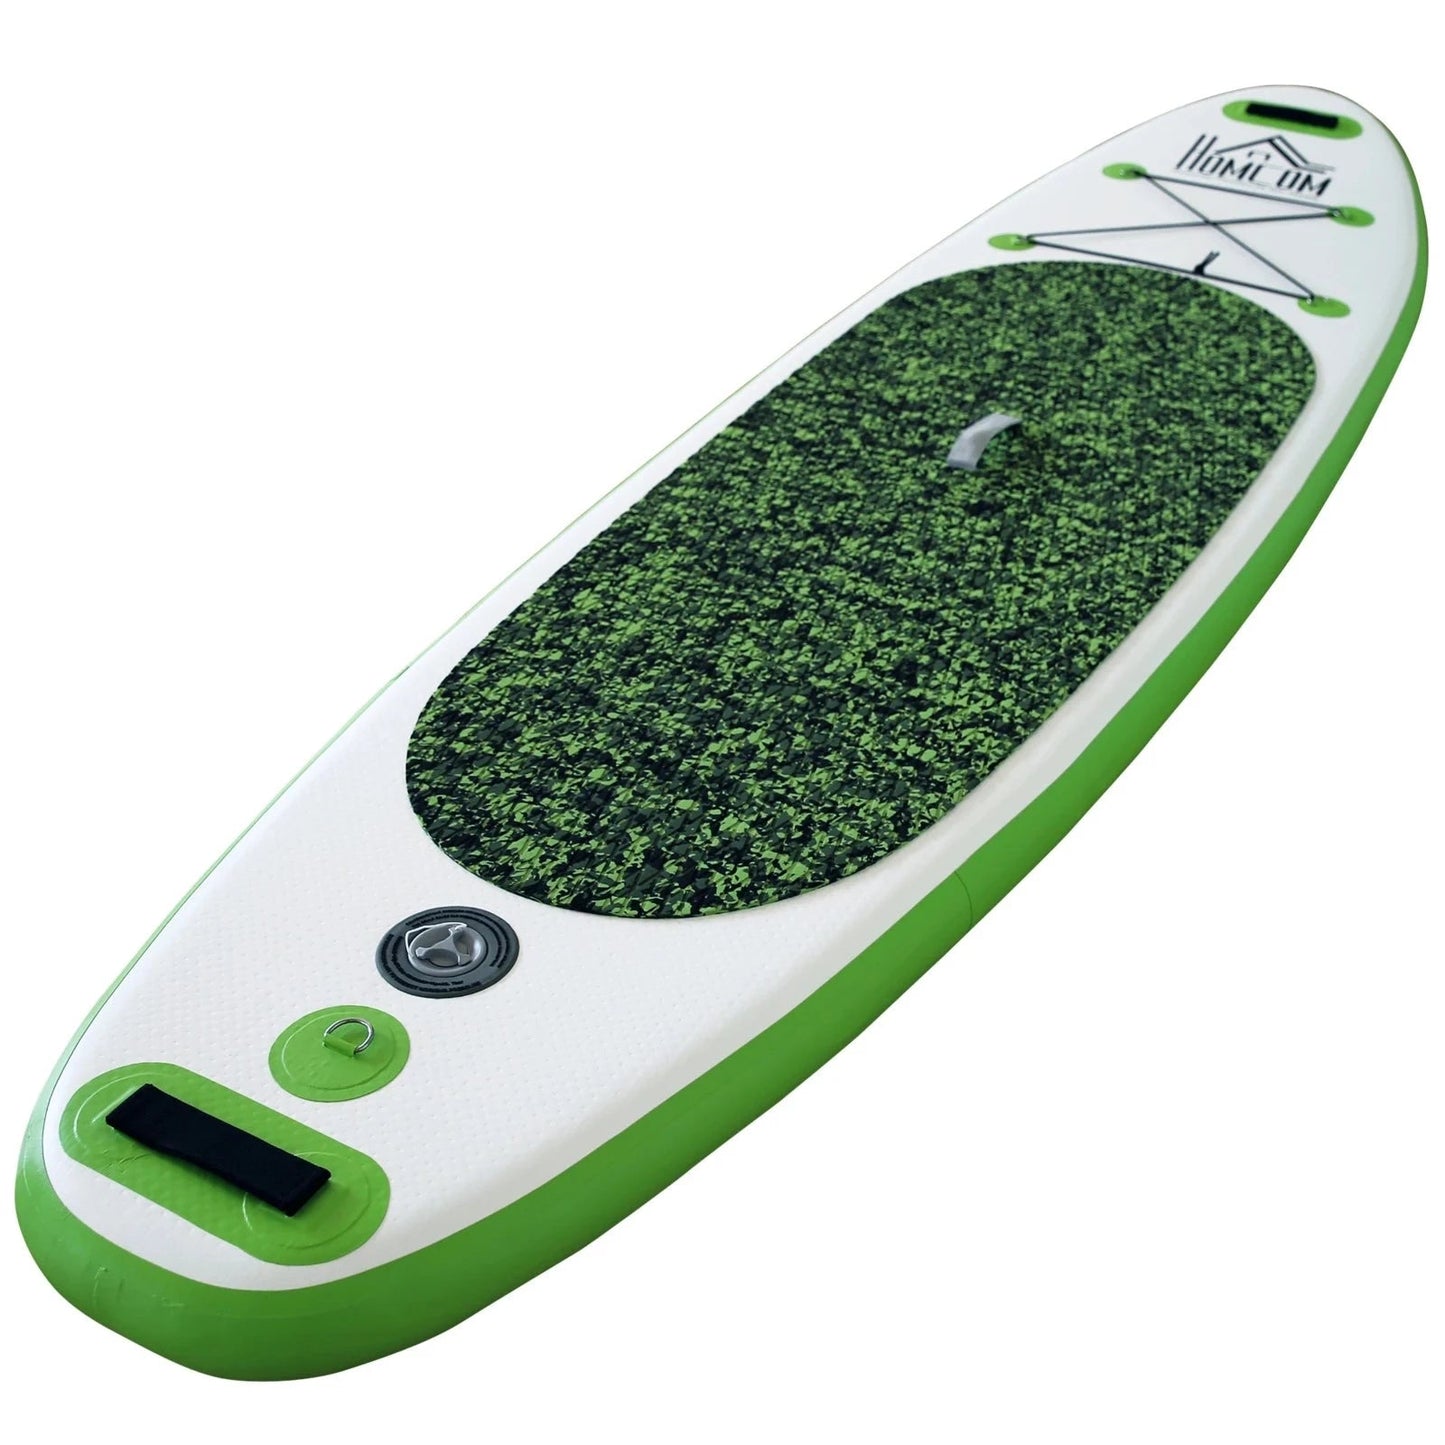 Tabla Paddle Surf